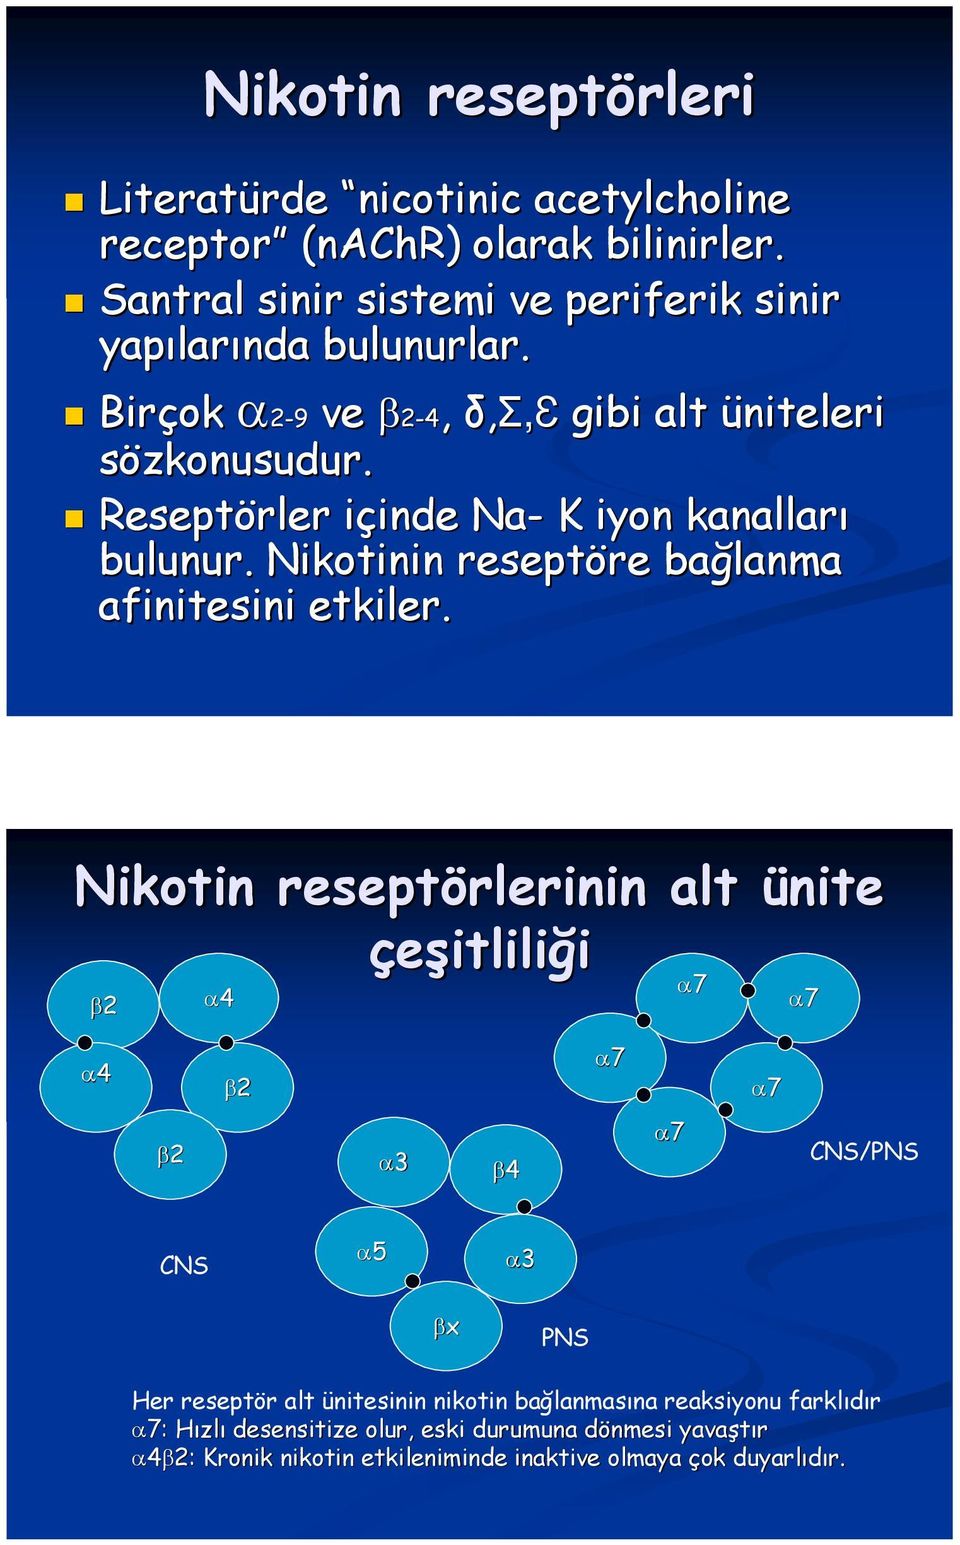 Reseptörler içinde i inde Na- K iyon kanalları bulunur. Nikotinin reseptöre bağlanma afinitesini etkiler.